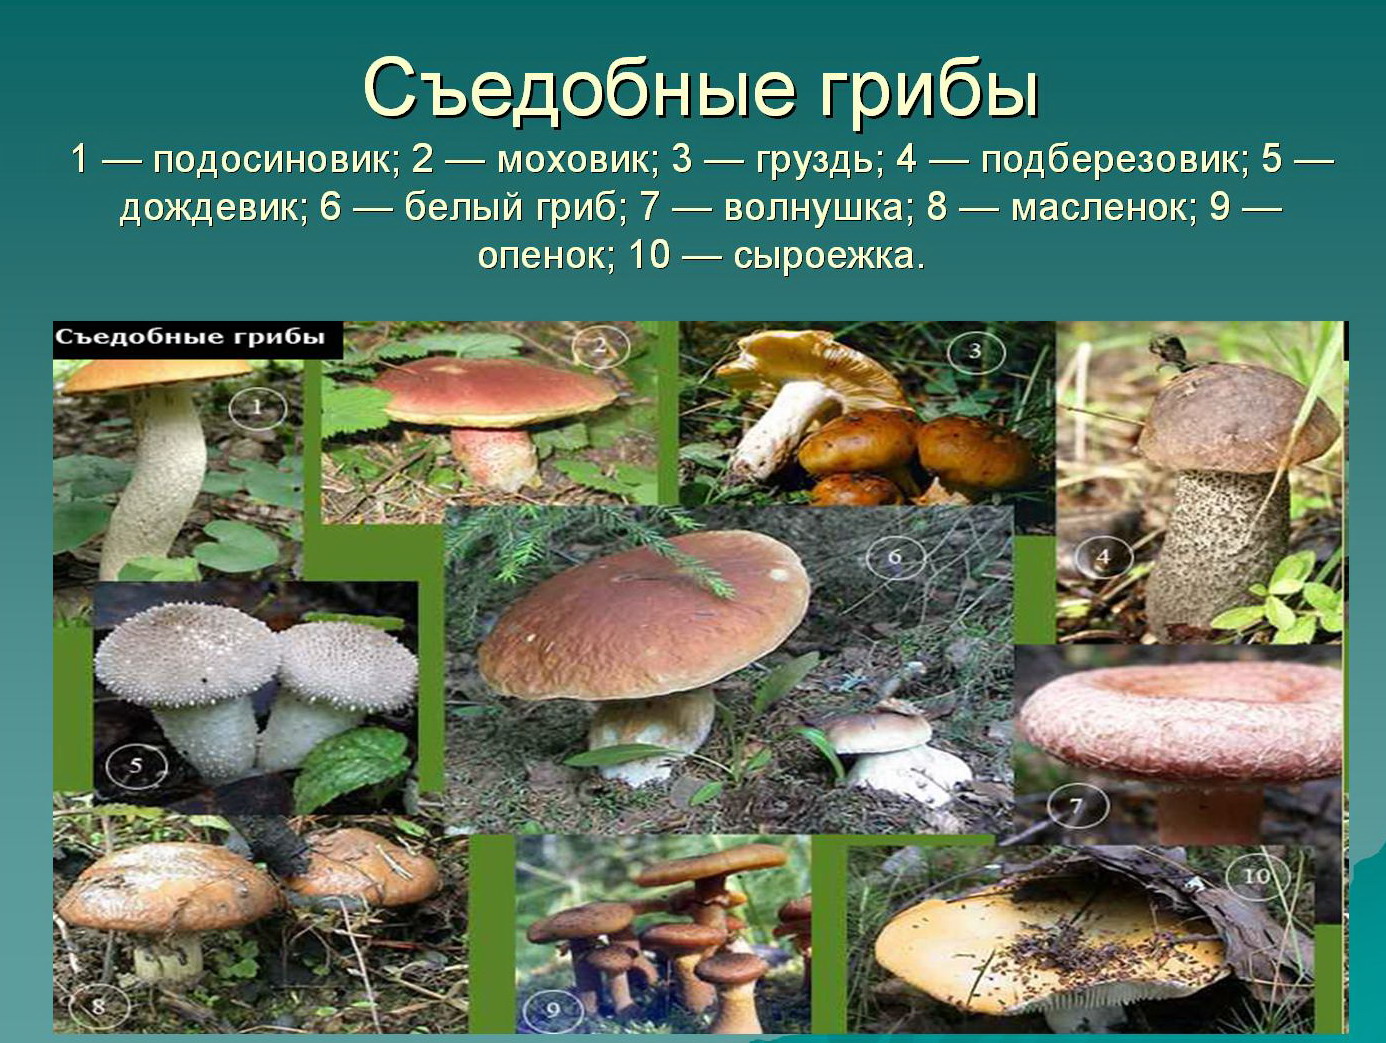 Картинки съедобных грибов с названиями